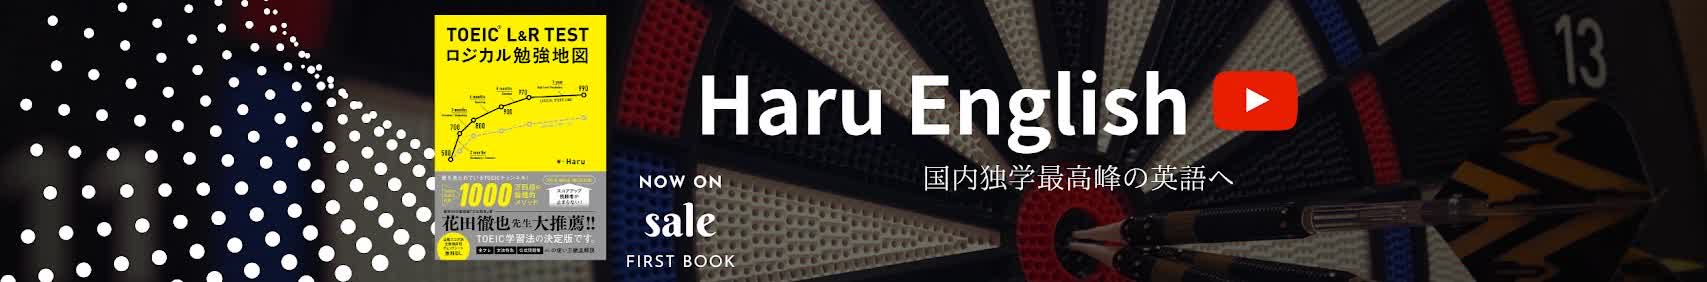 Haru English